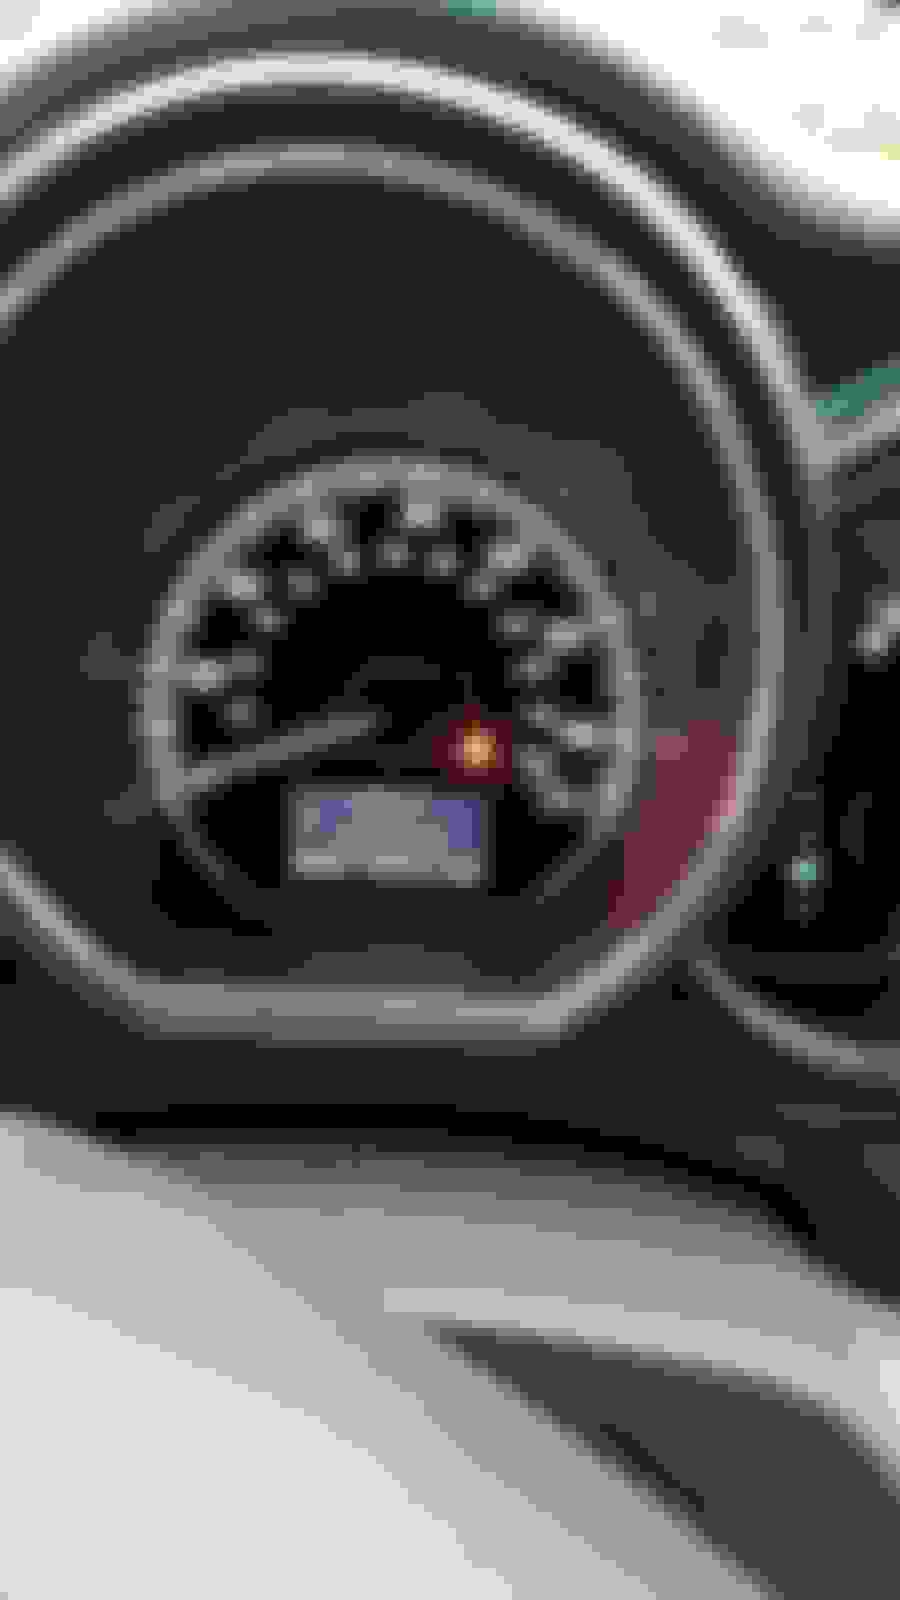 C1241 error code 06 rx400h and tire indicator - ClubLexus - Lexus Forum